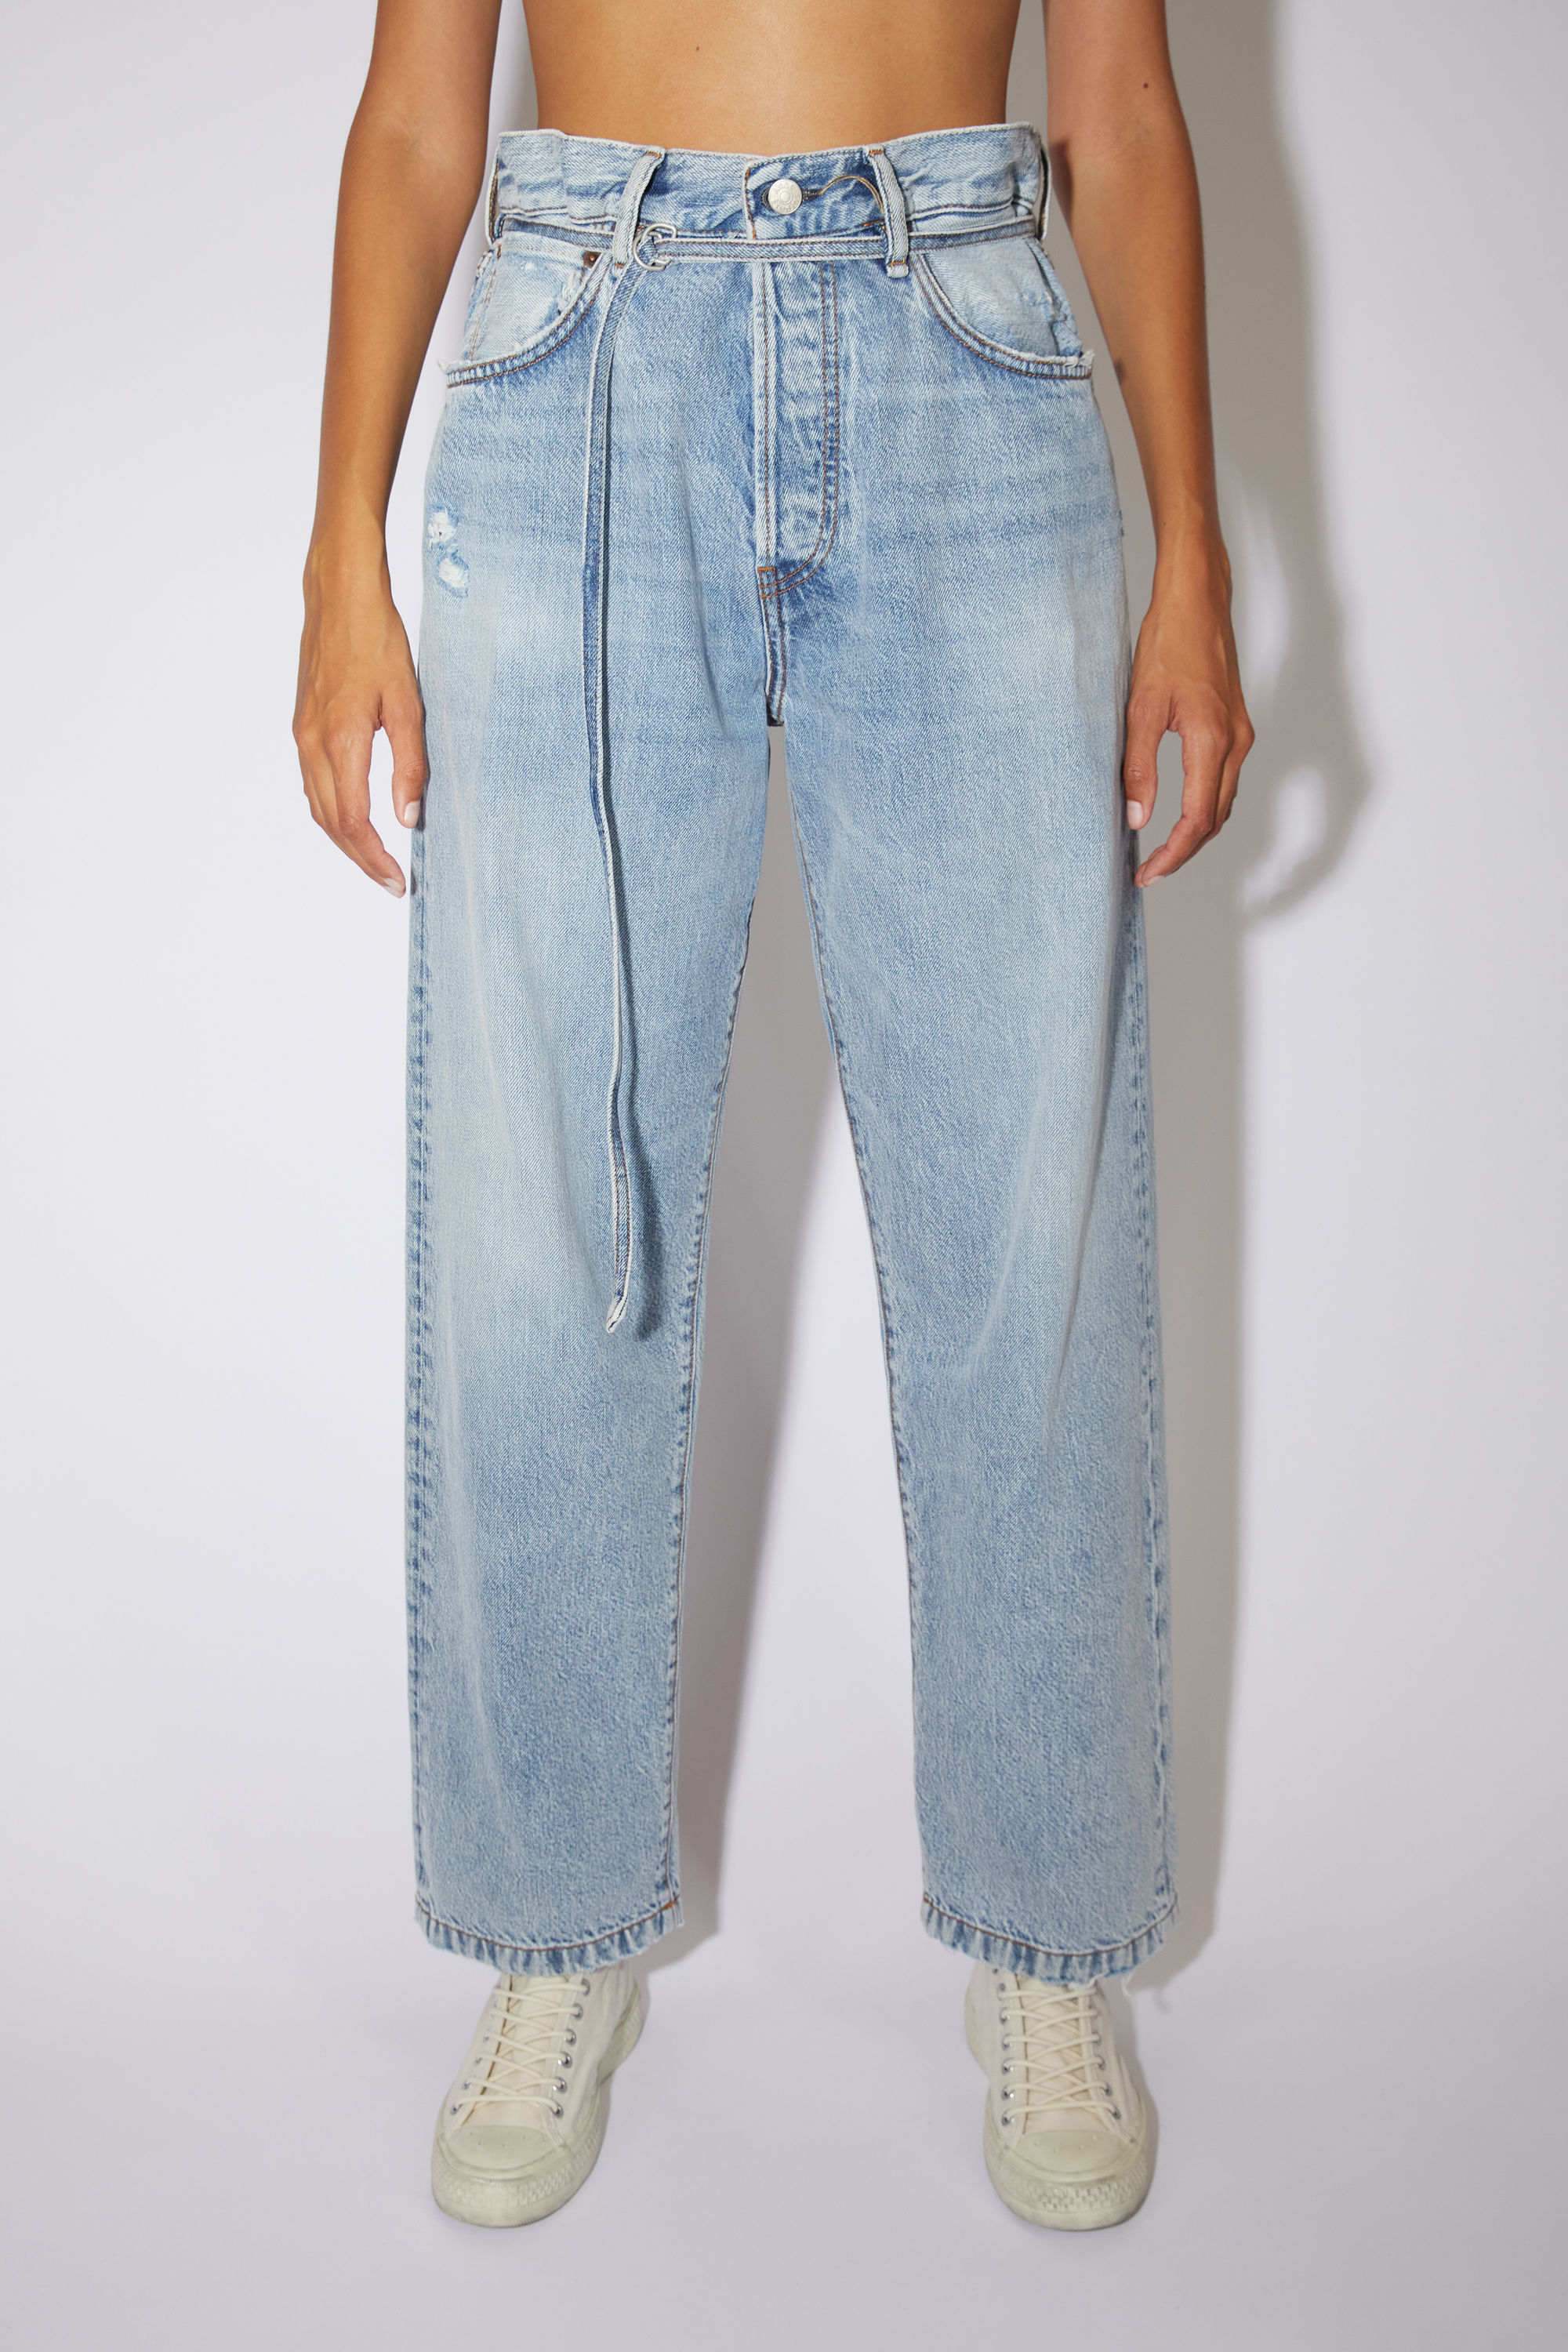 Acne Studios - Shop women's five-pocket denim - Women's Acne Jeans